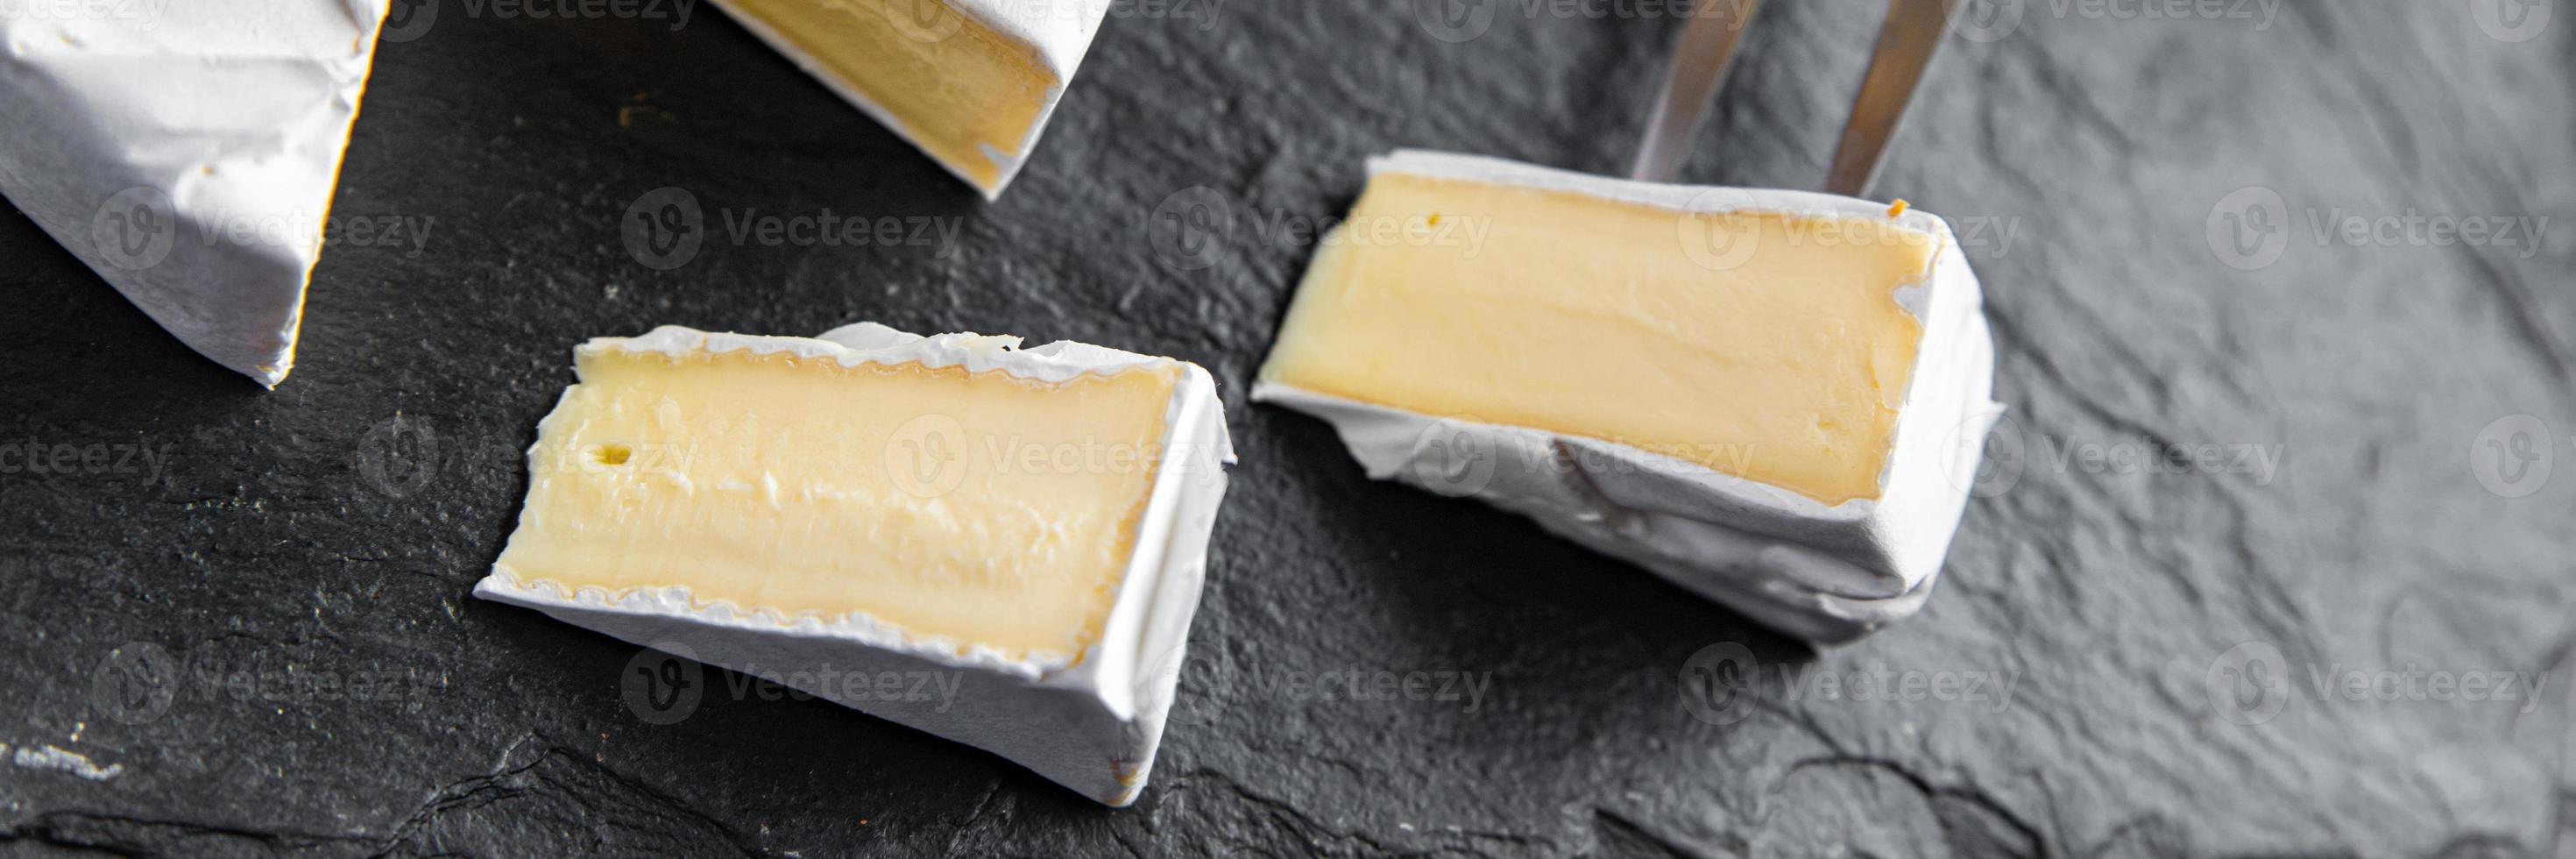 camembert eller brie ost huvud av mjuk ost hälsosam måltid foto